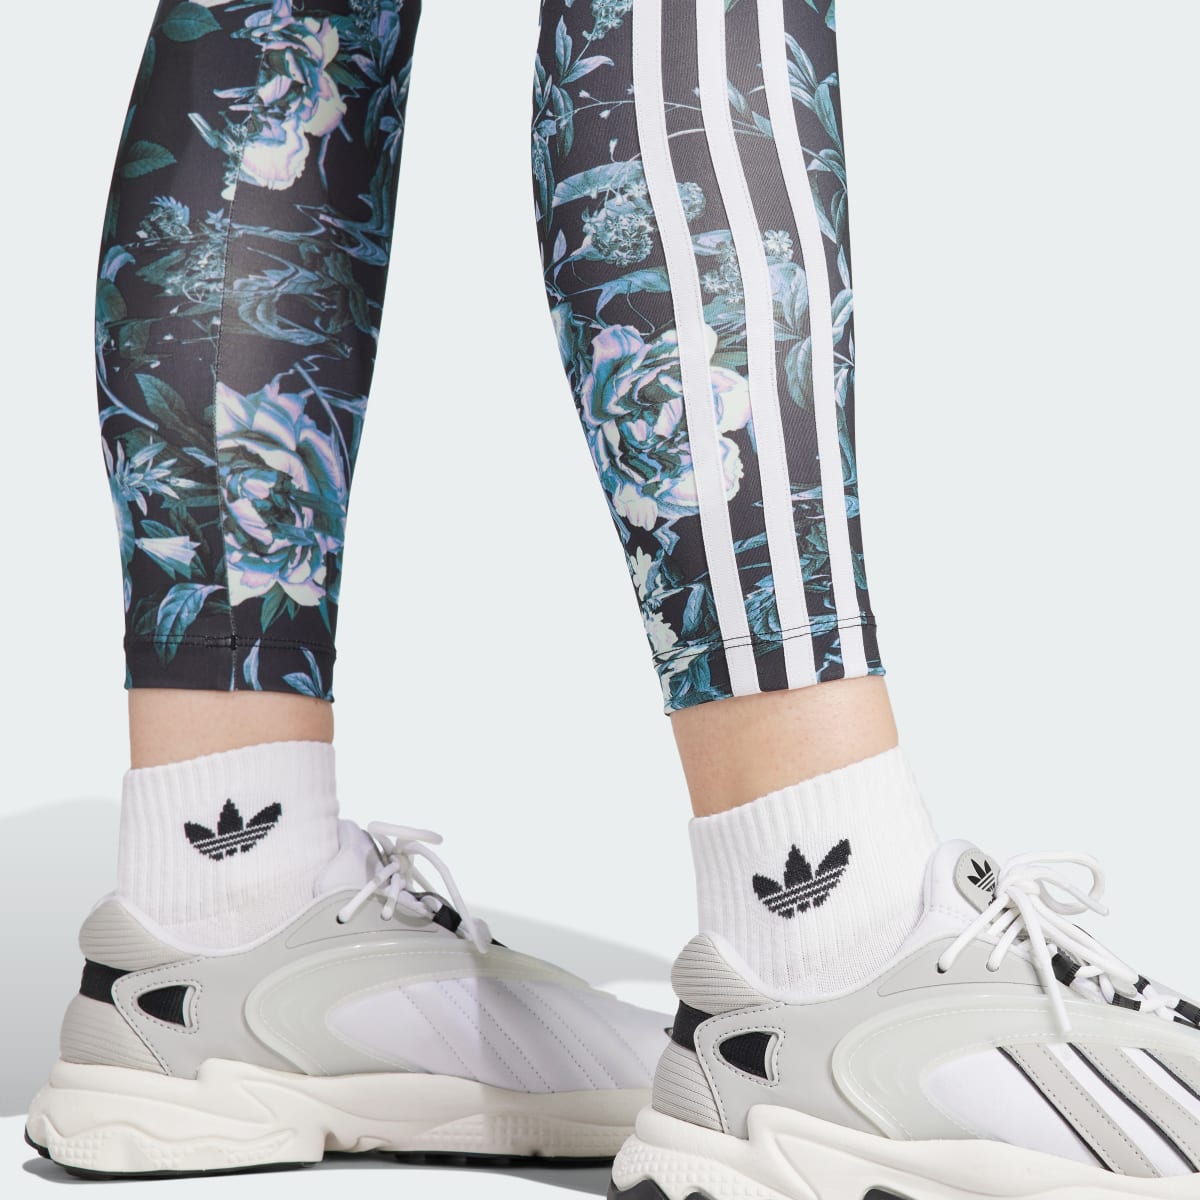 Adidas Allover Print Flower Leggings. 6